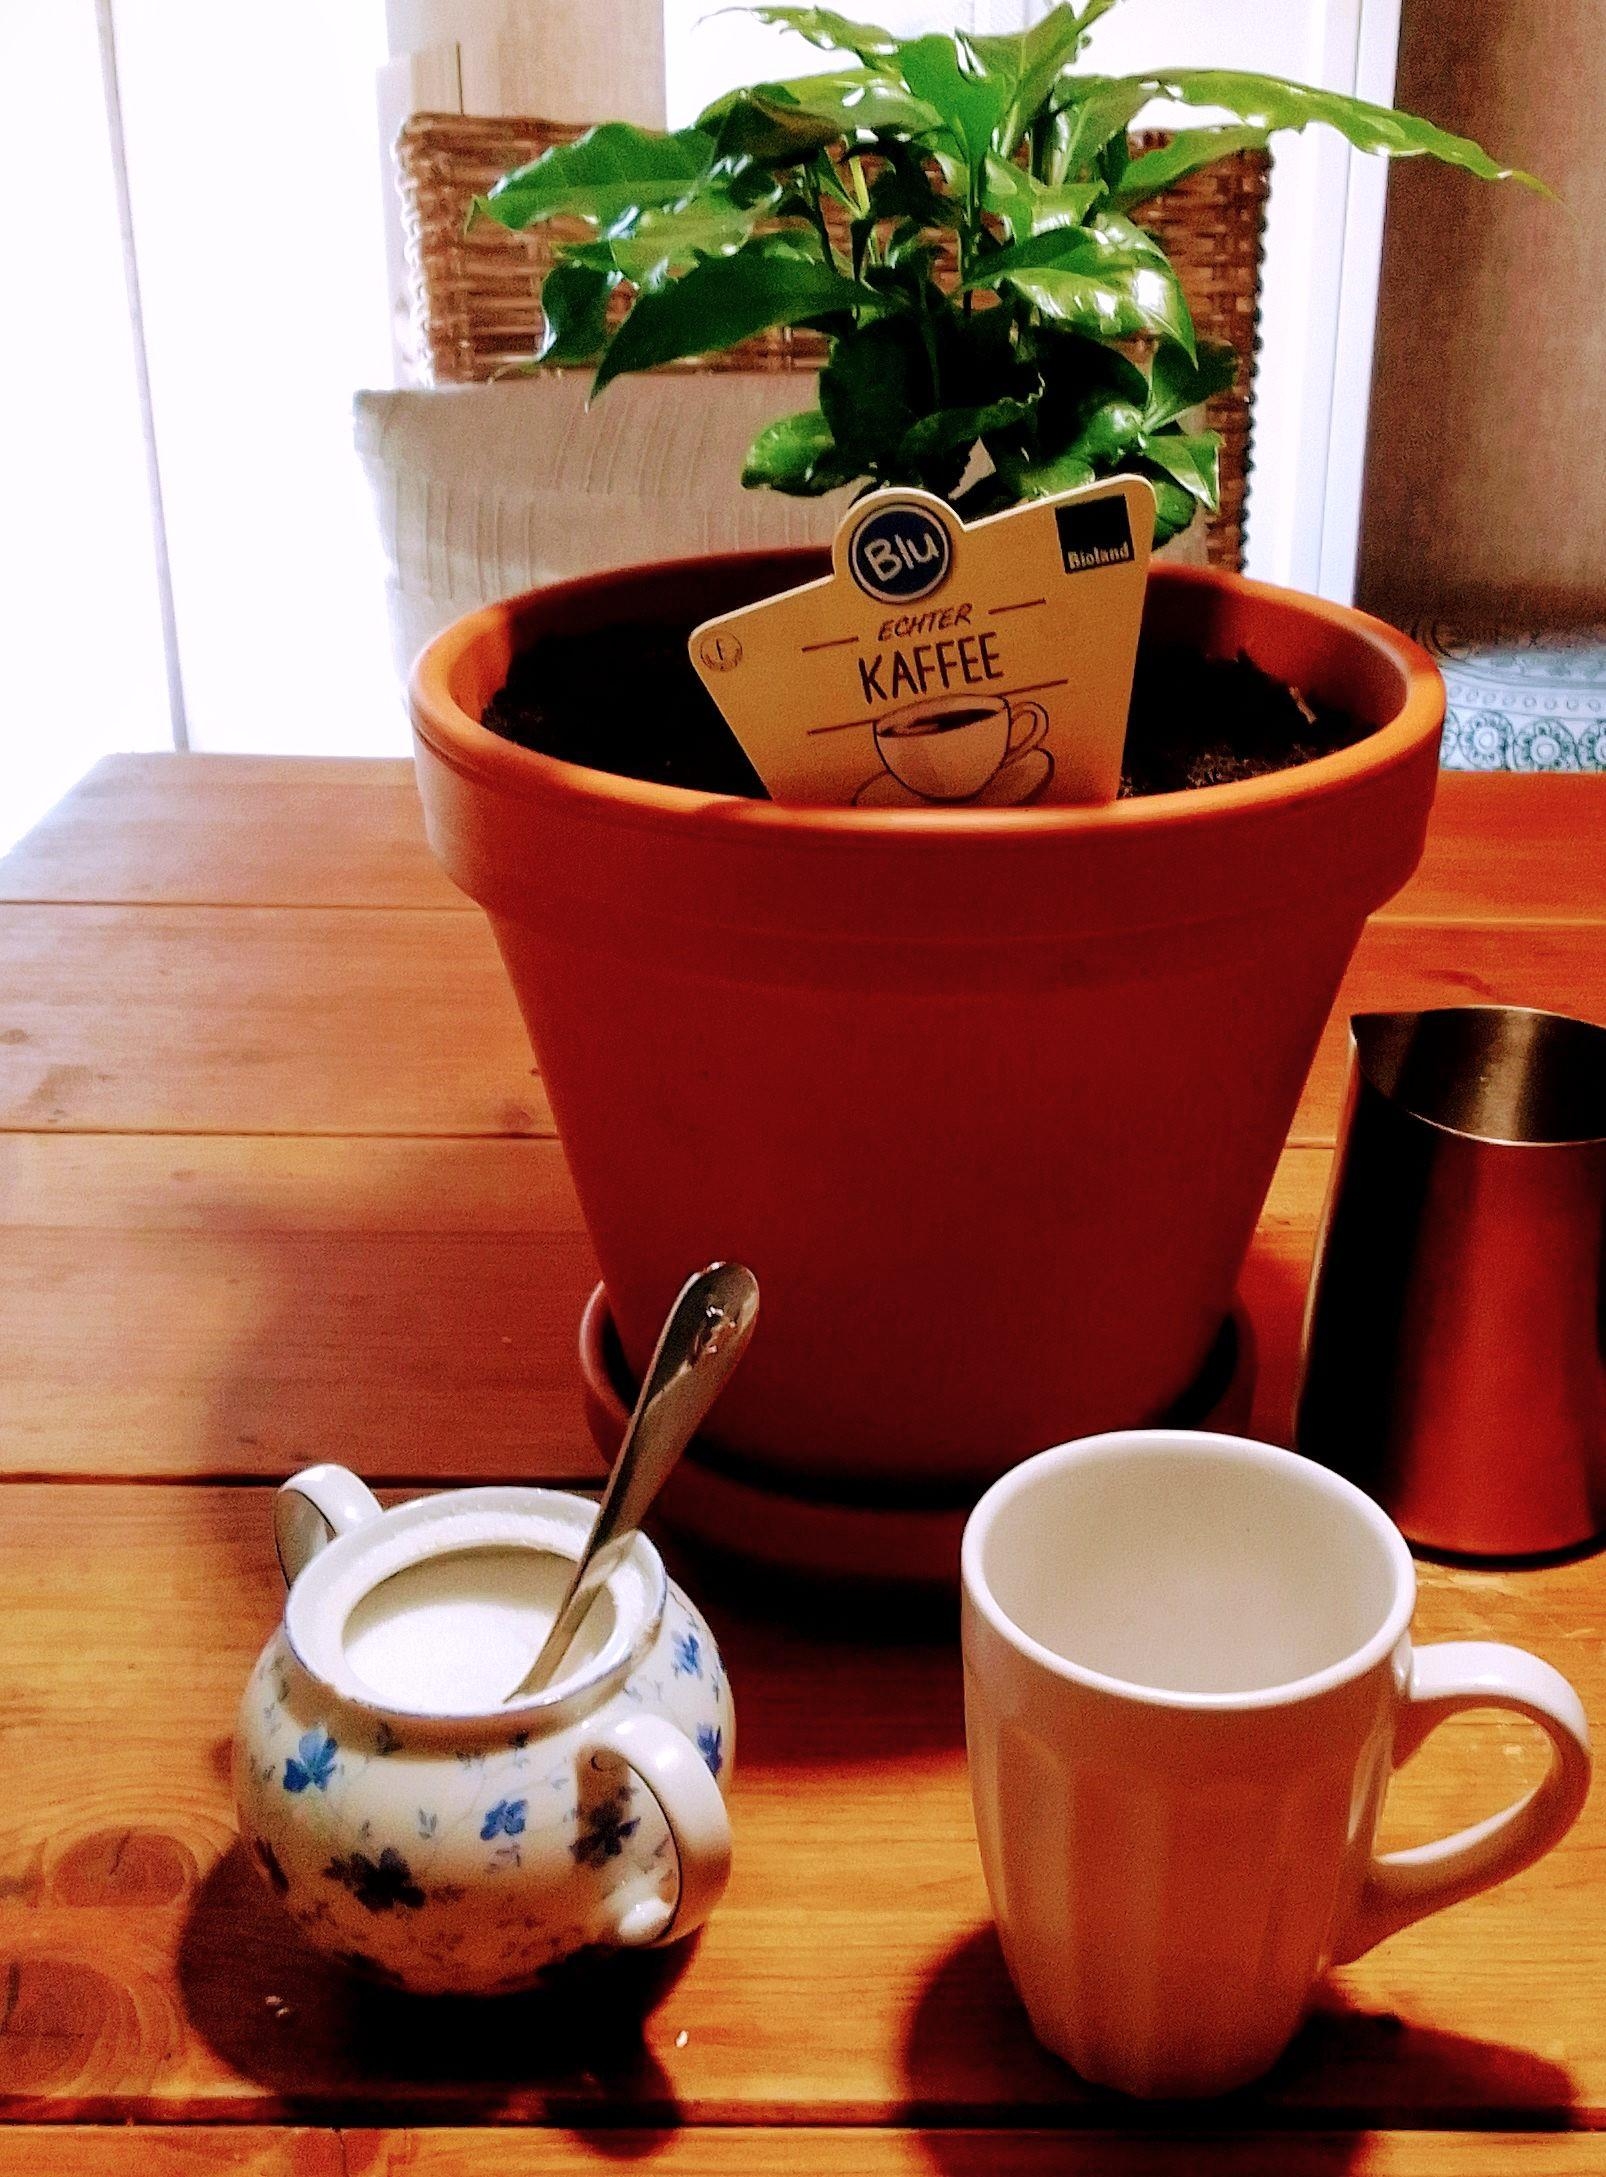 #Kaffee #Pflanze #Tischdeko #Geschenk #Kaffeepflanze ich will sie ja nicht unter Druck setzten...aber ich wäre dann soweit